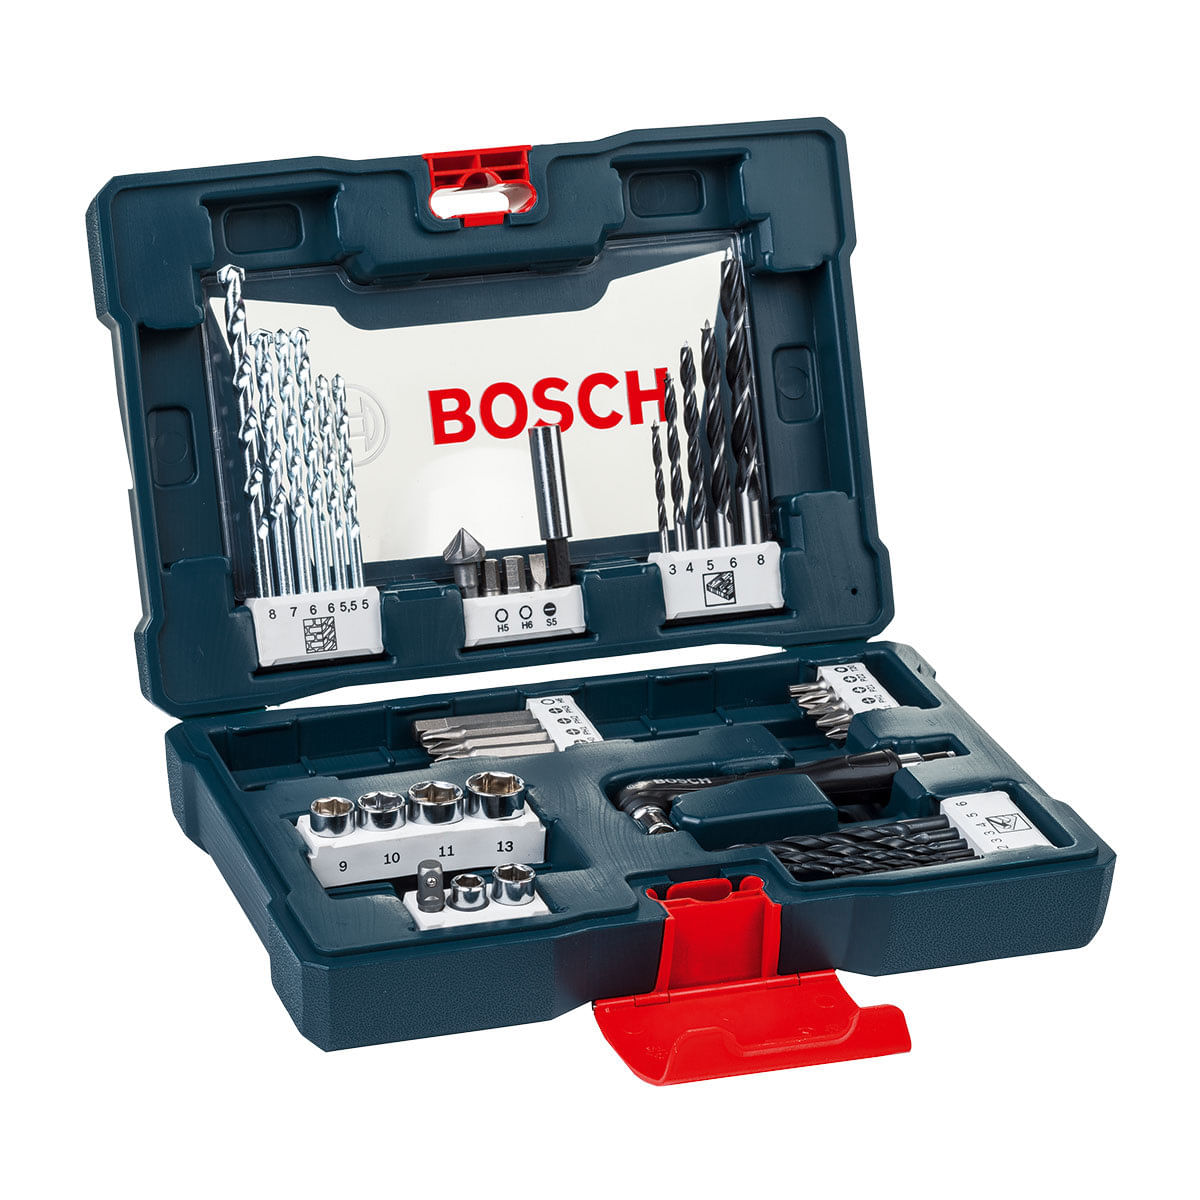 5522129_Jogo-de-Brocas-e-Bits-Bosch-41-Pecas-X-Line-2607017396-000_1_Zoom